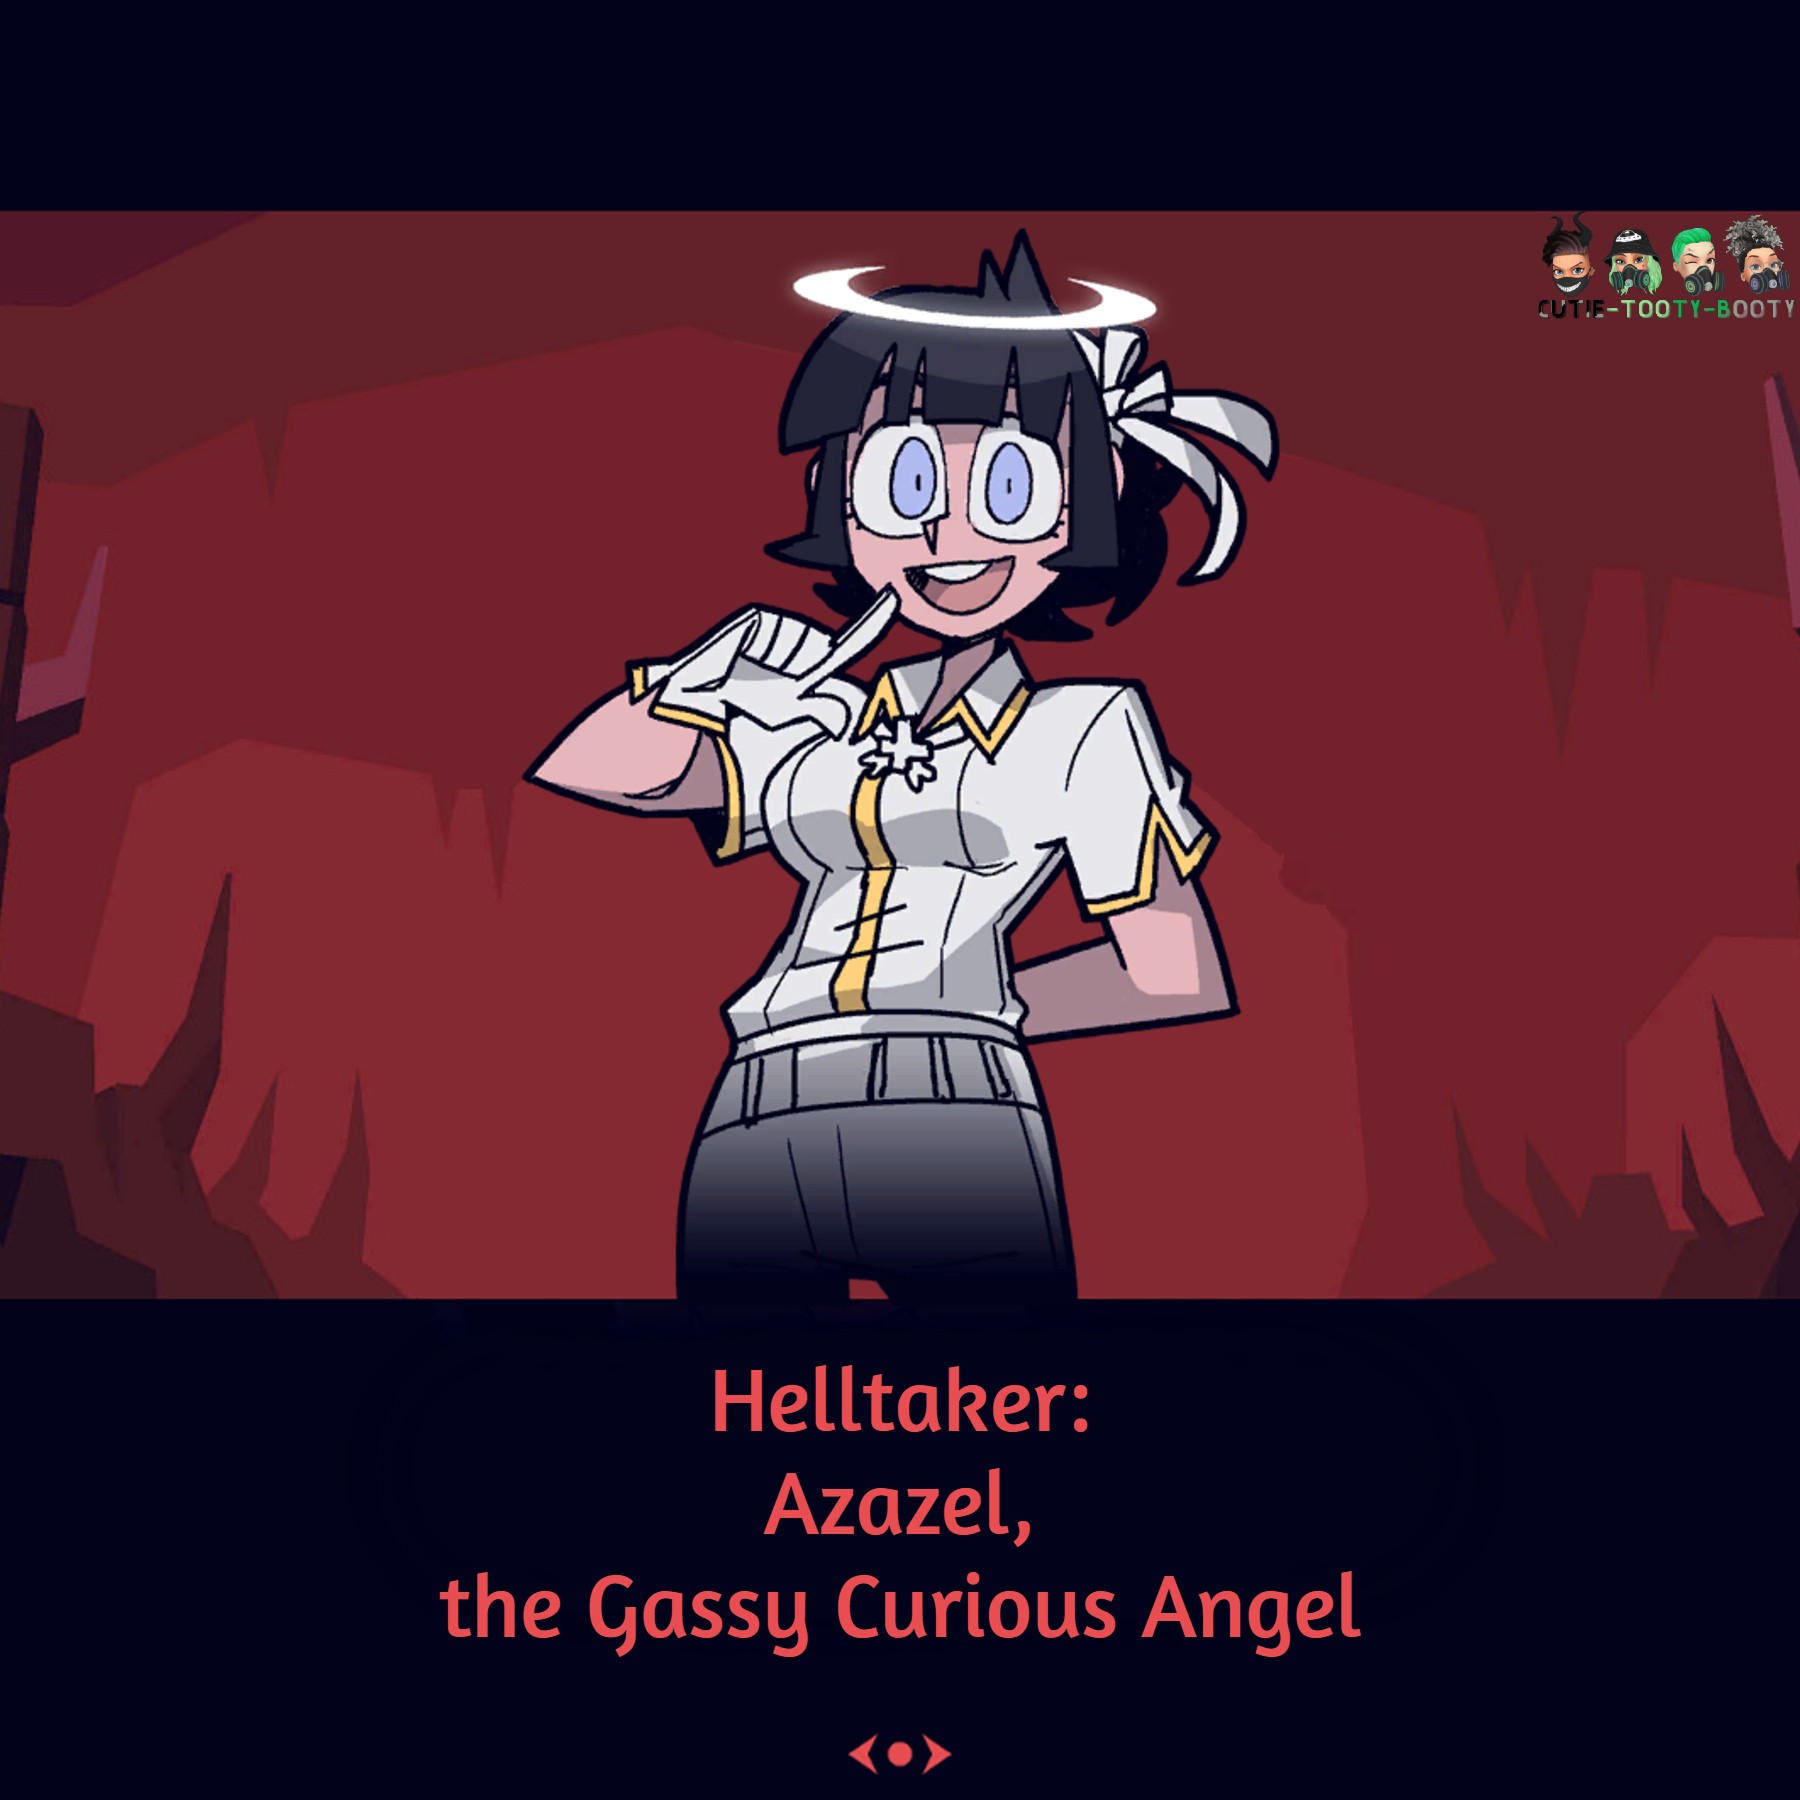 Helltaker: Azazel, the Gassy Curious Angel